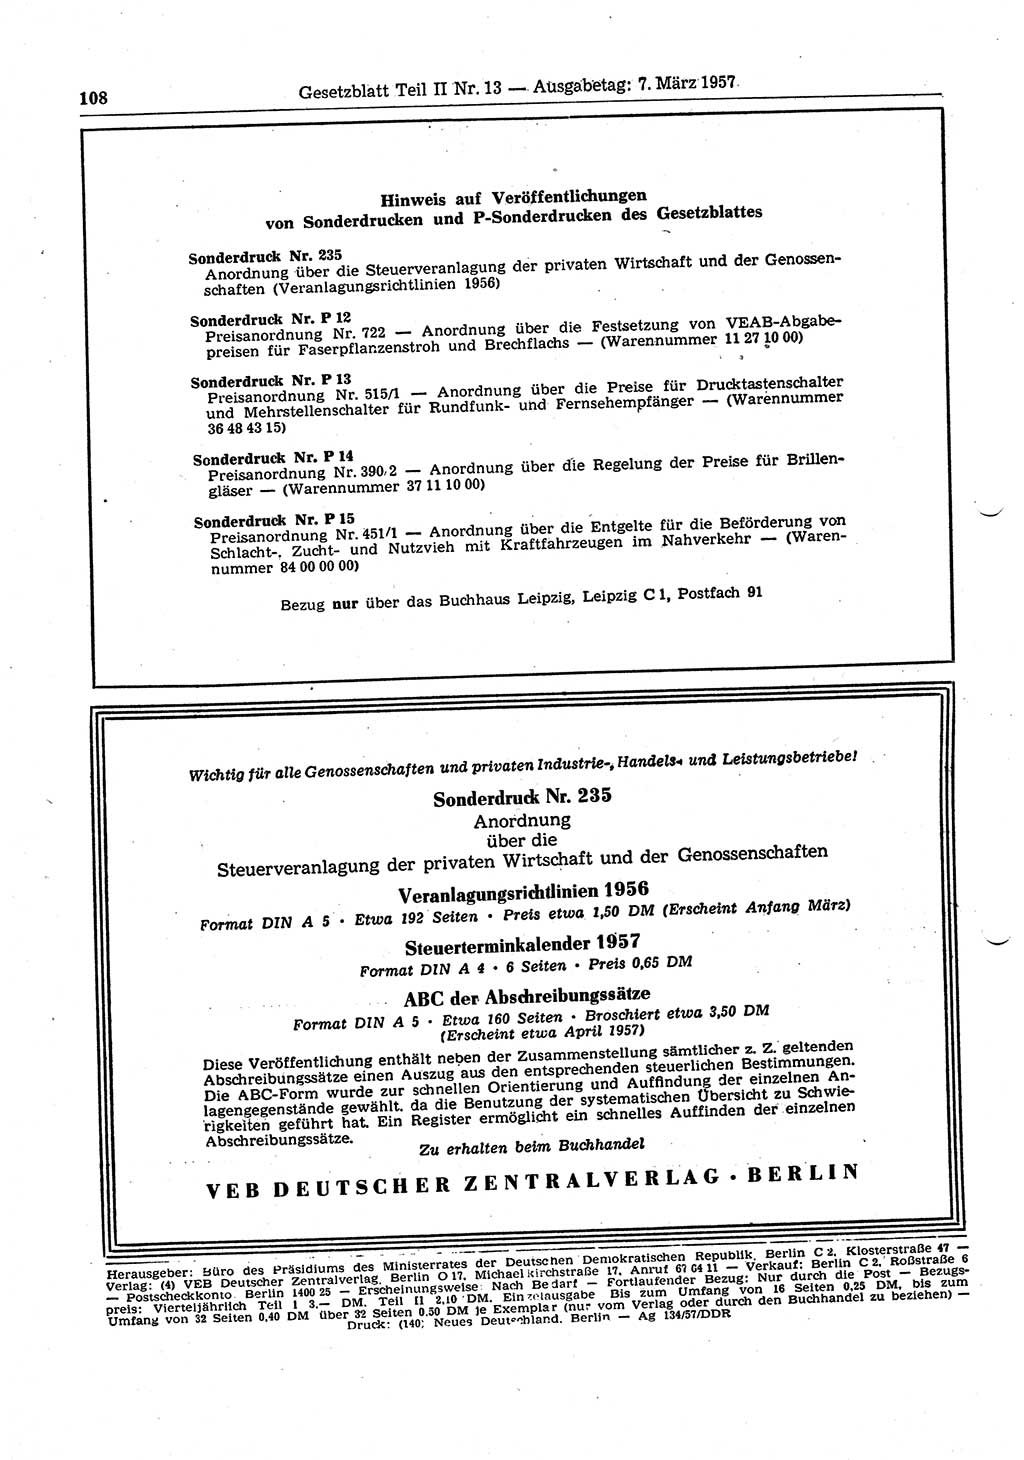 Gesetzblatt (GBl.) der Deutschen Demokratischen Republik (DDR) Teil ⅠⅠ 1957, Seite 108 (GBl. DDR ⅠⅠ 1957, S. 108)